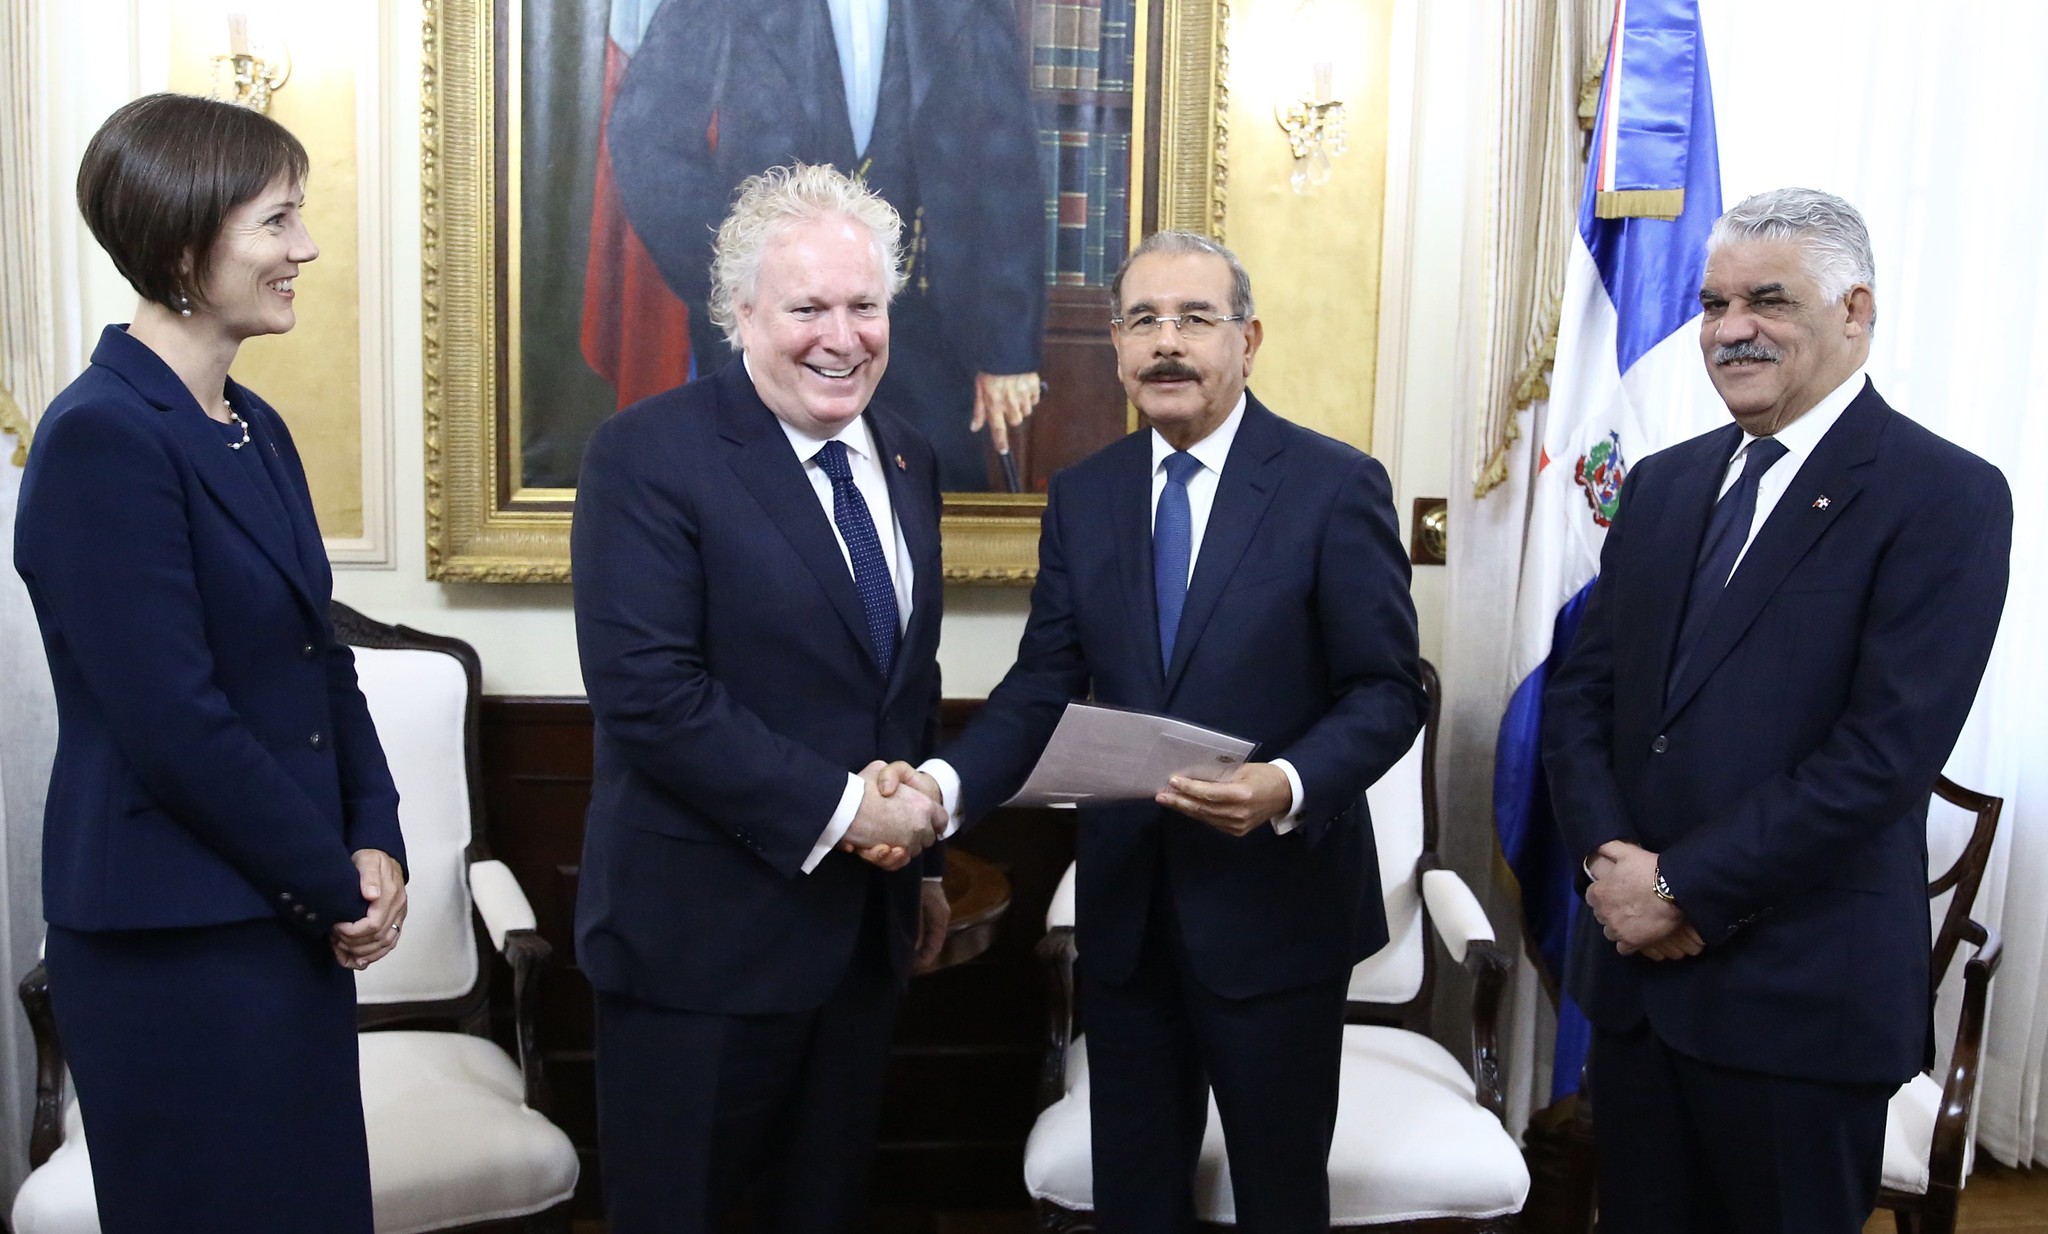 REPÚBLICA DOMINICANA: Presidente Danilo Medina recibe visita de cortesía de Jean Charest, enviado especial del primer ministro de Canadá